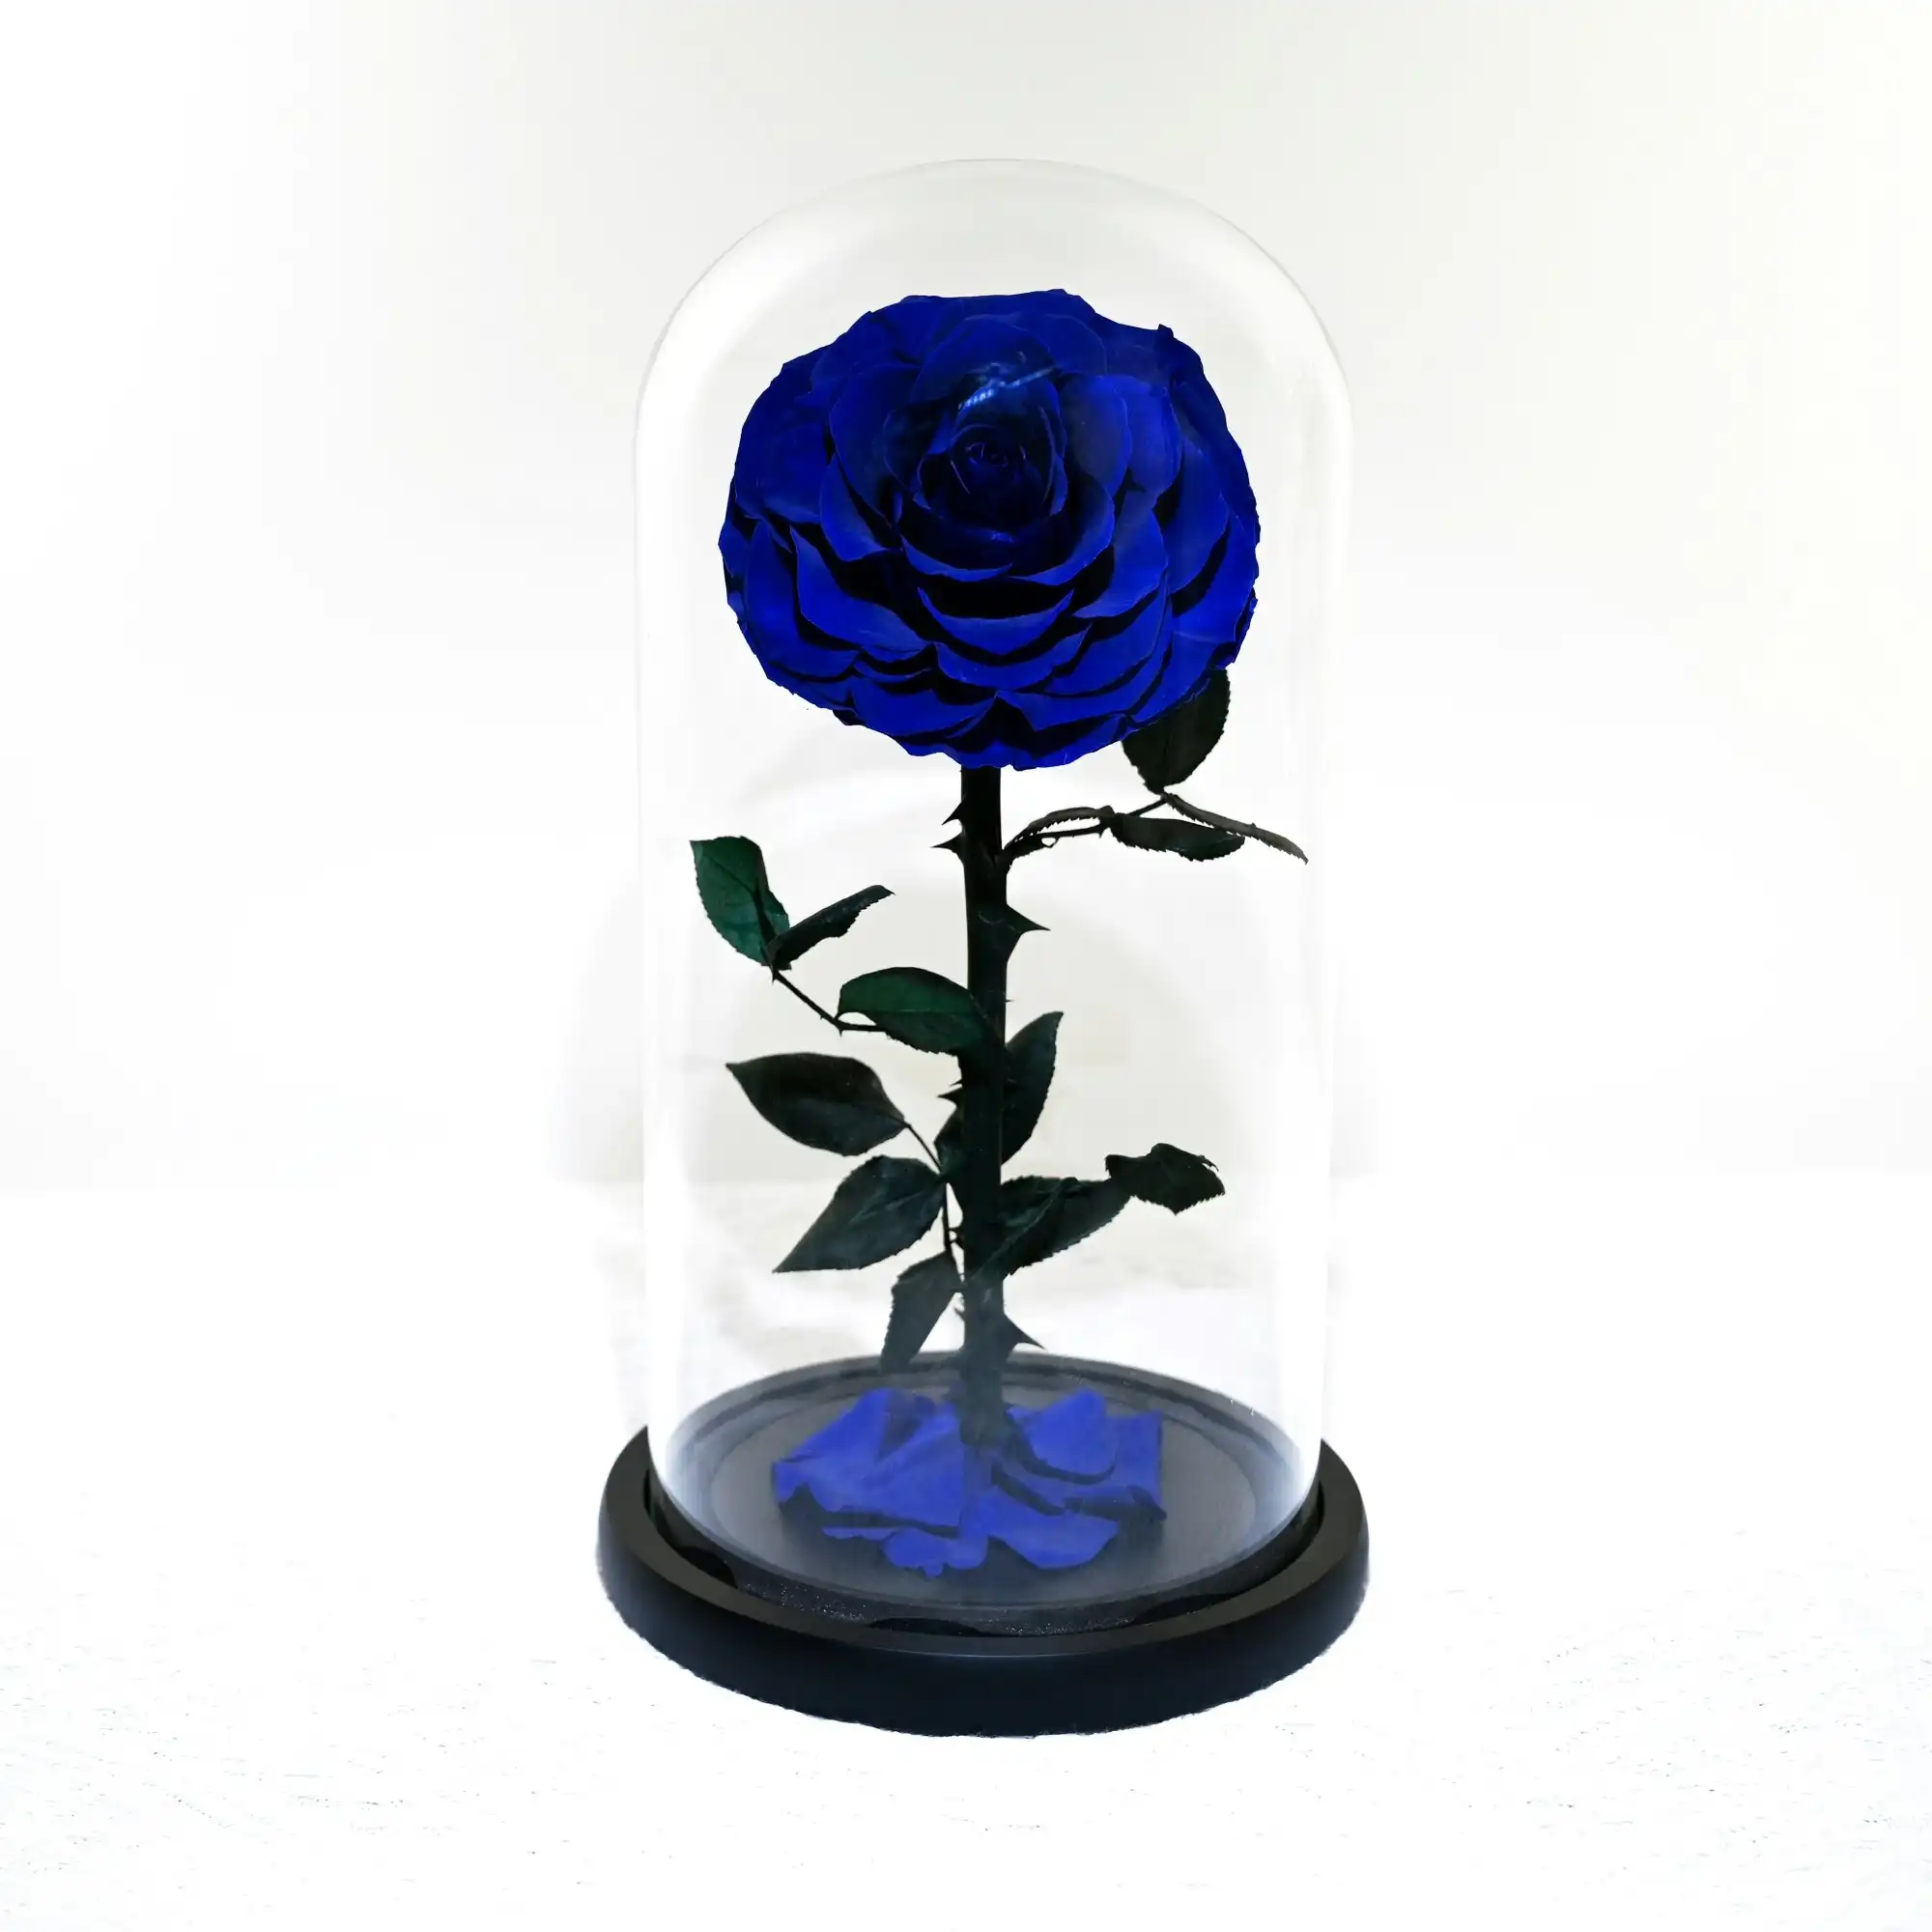 Vistara Timeless Rose - Natural 30cm Blue Preserved Rose